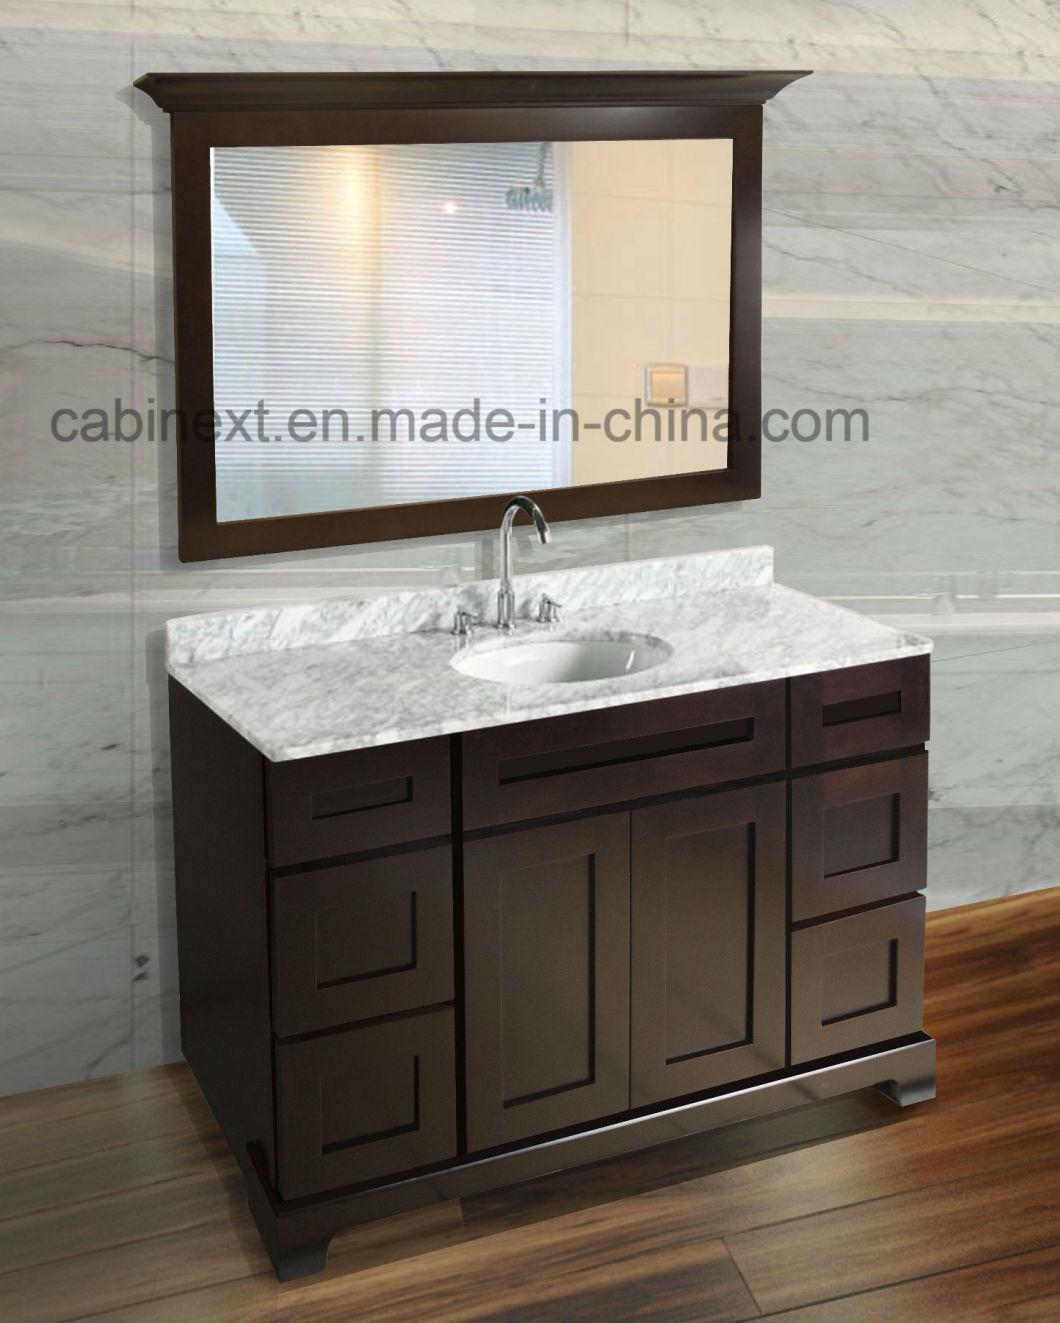 Furniture Manufacture Make Solid Wooden Bathroom Vanity Sink Base Cabinets